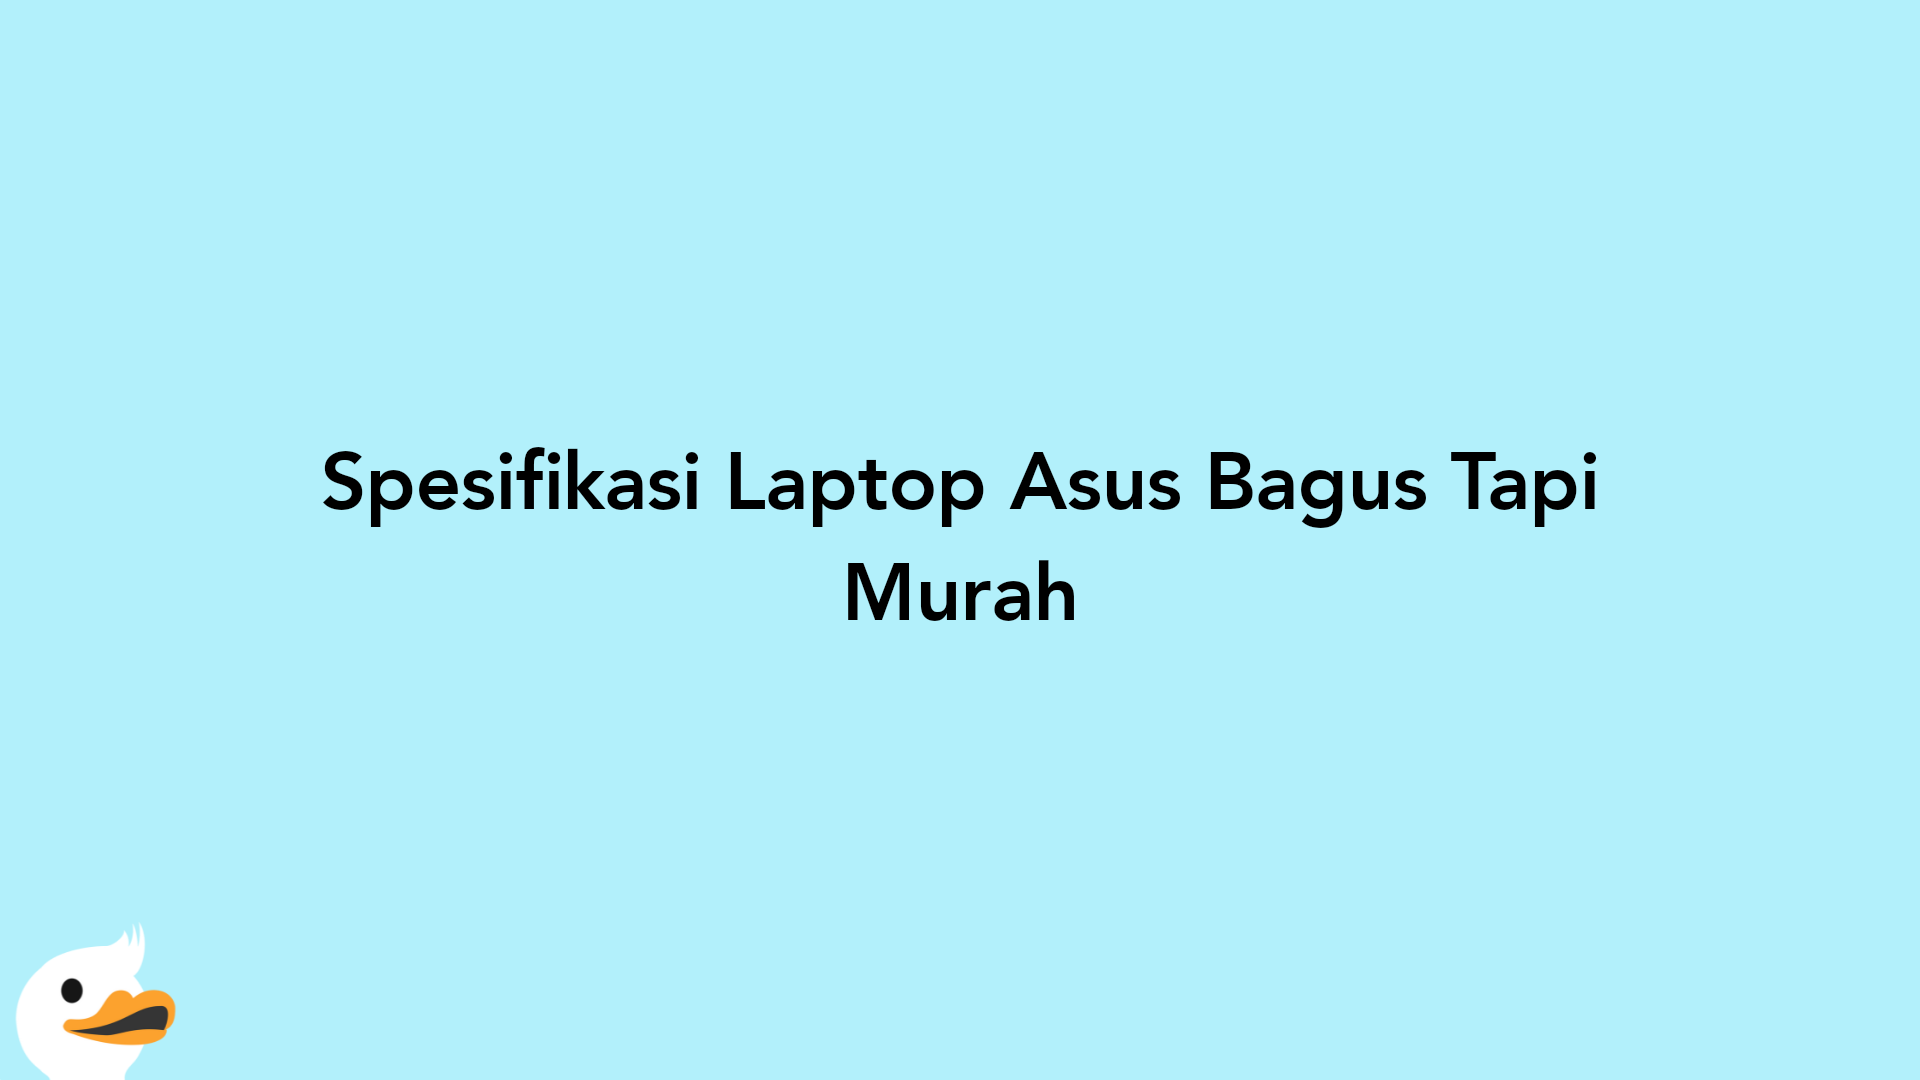 Spesifikasi Laptop Asus Bagus Tapi Murah